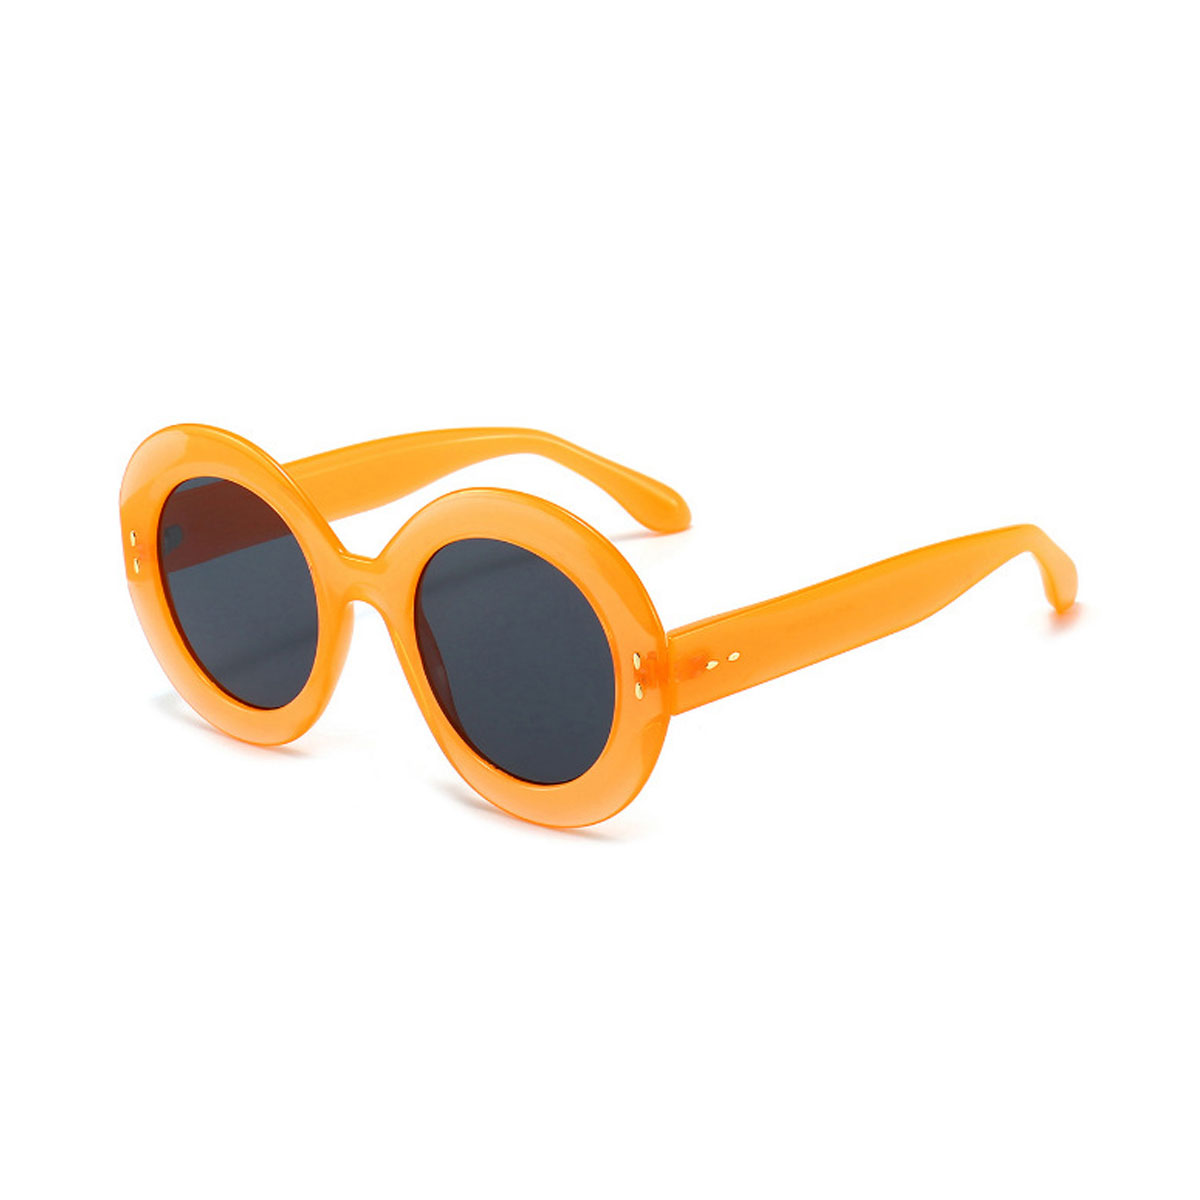 ASOS DESIGN round sunglasses in black metal with orange lens | ASOS